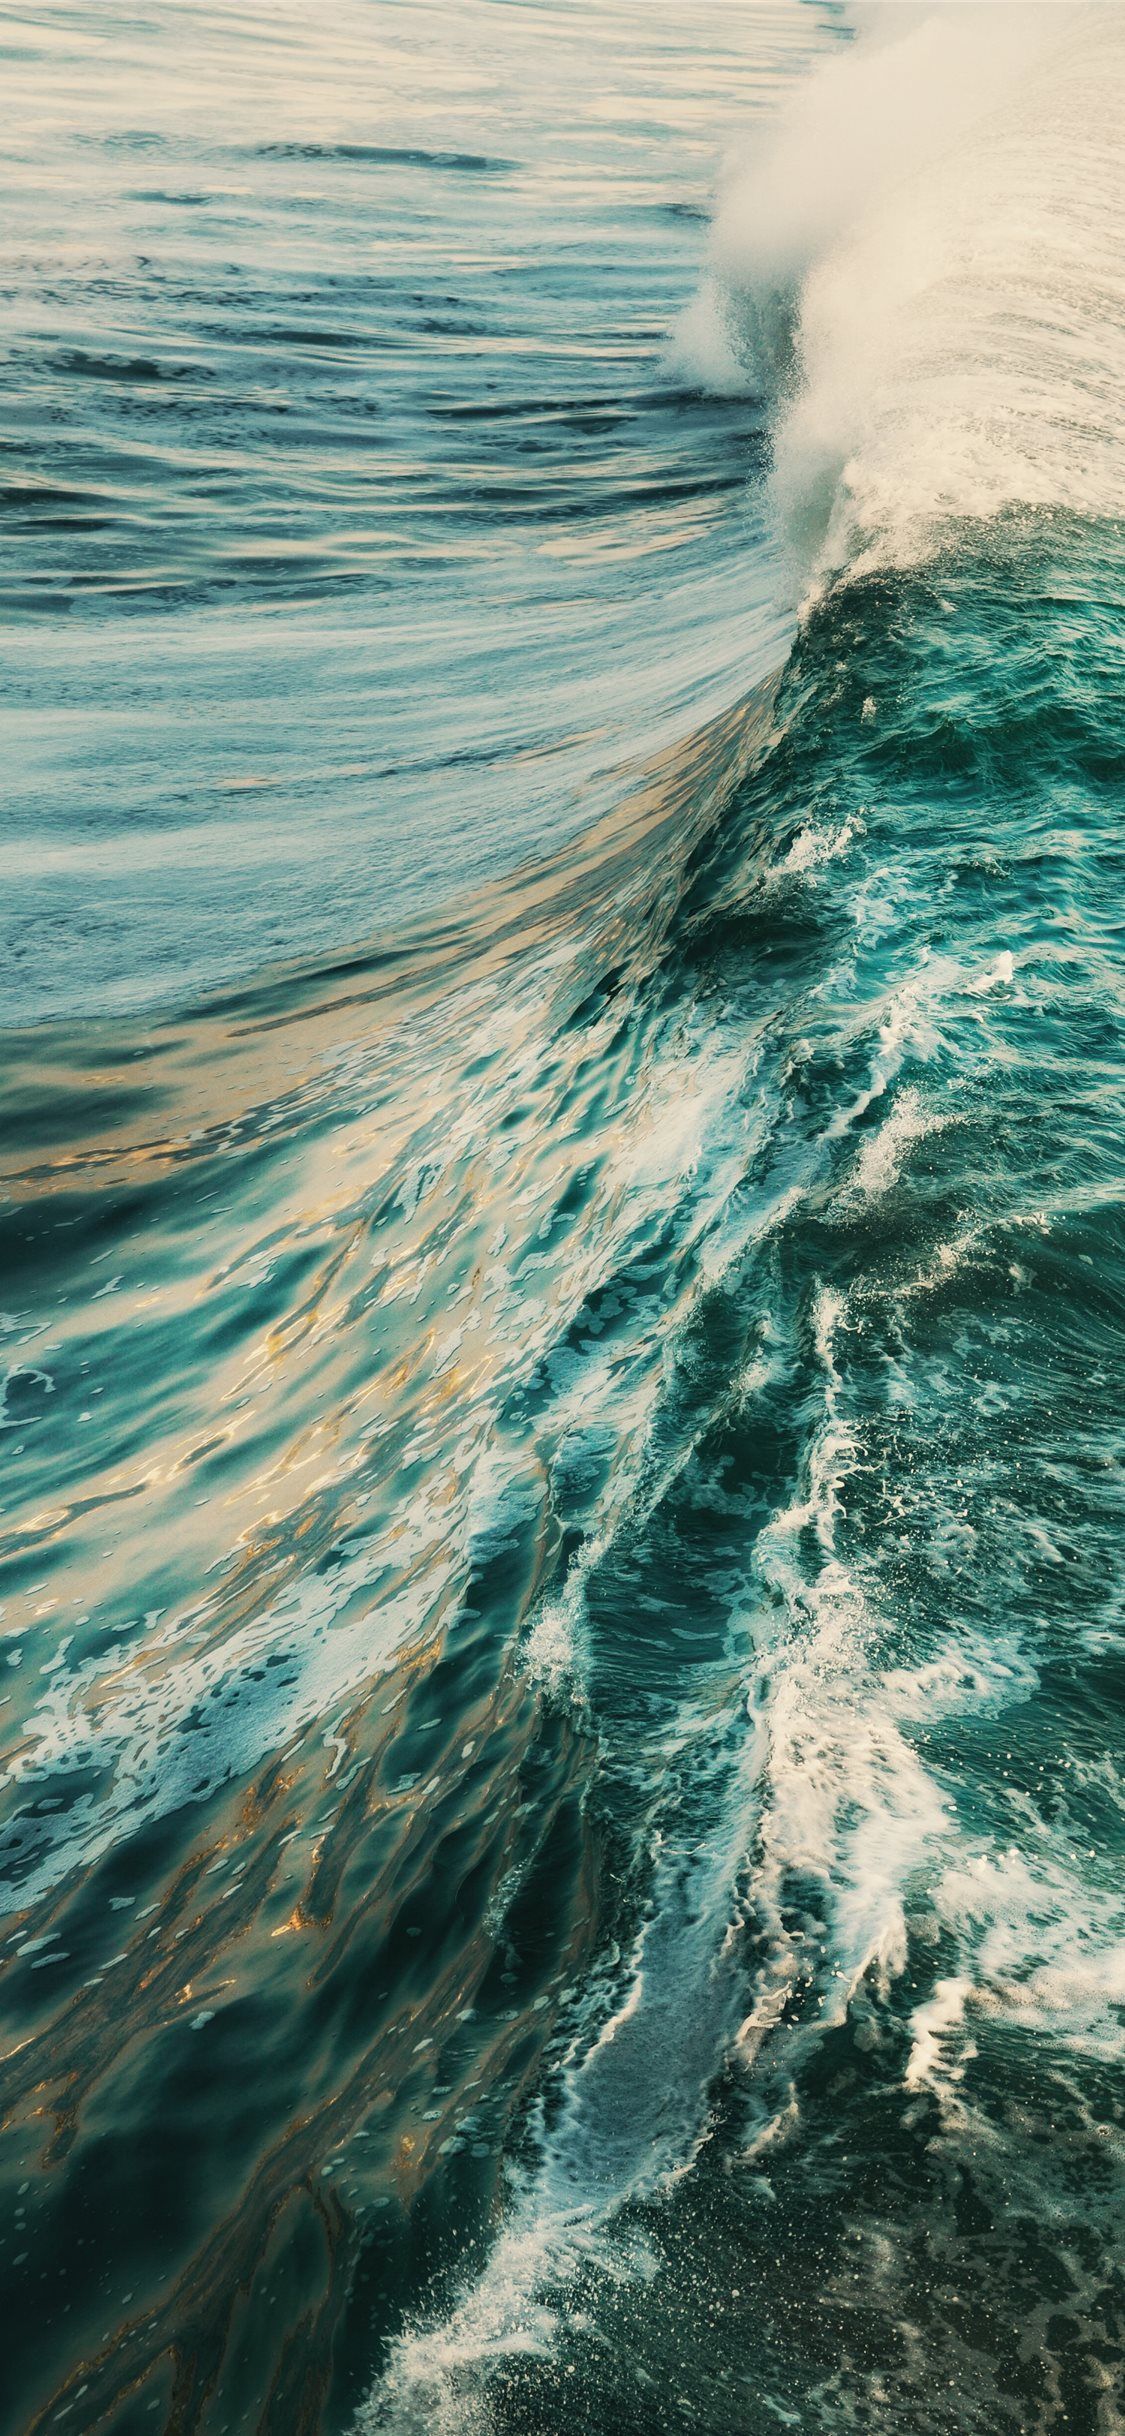 blue ocean waves during daytime #ocean #water #nature #teal #wave #Malibu #CA. Ocean wallpaper, Ocean waves, Waves wallpaper